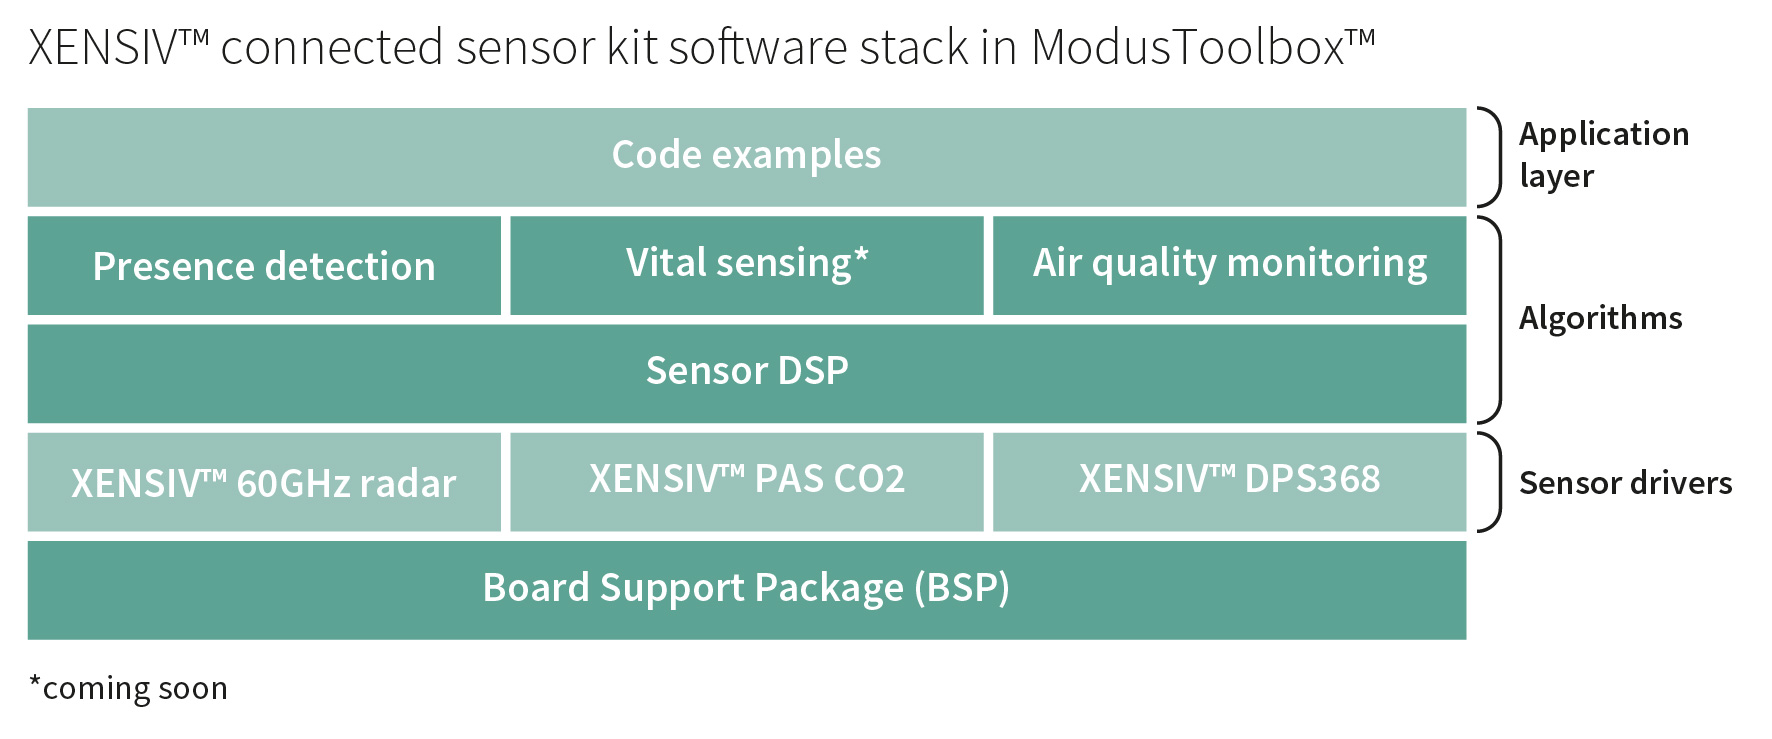 图5. ModusToolbox™中的 XENSIV™ 连接传感器套件软件堆栈.jpg